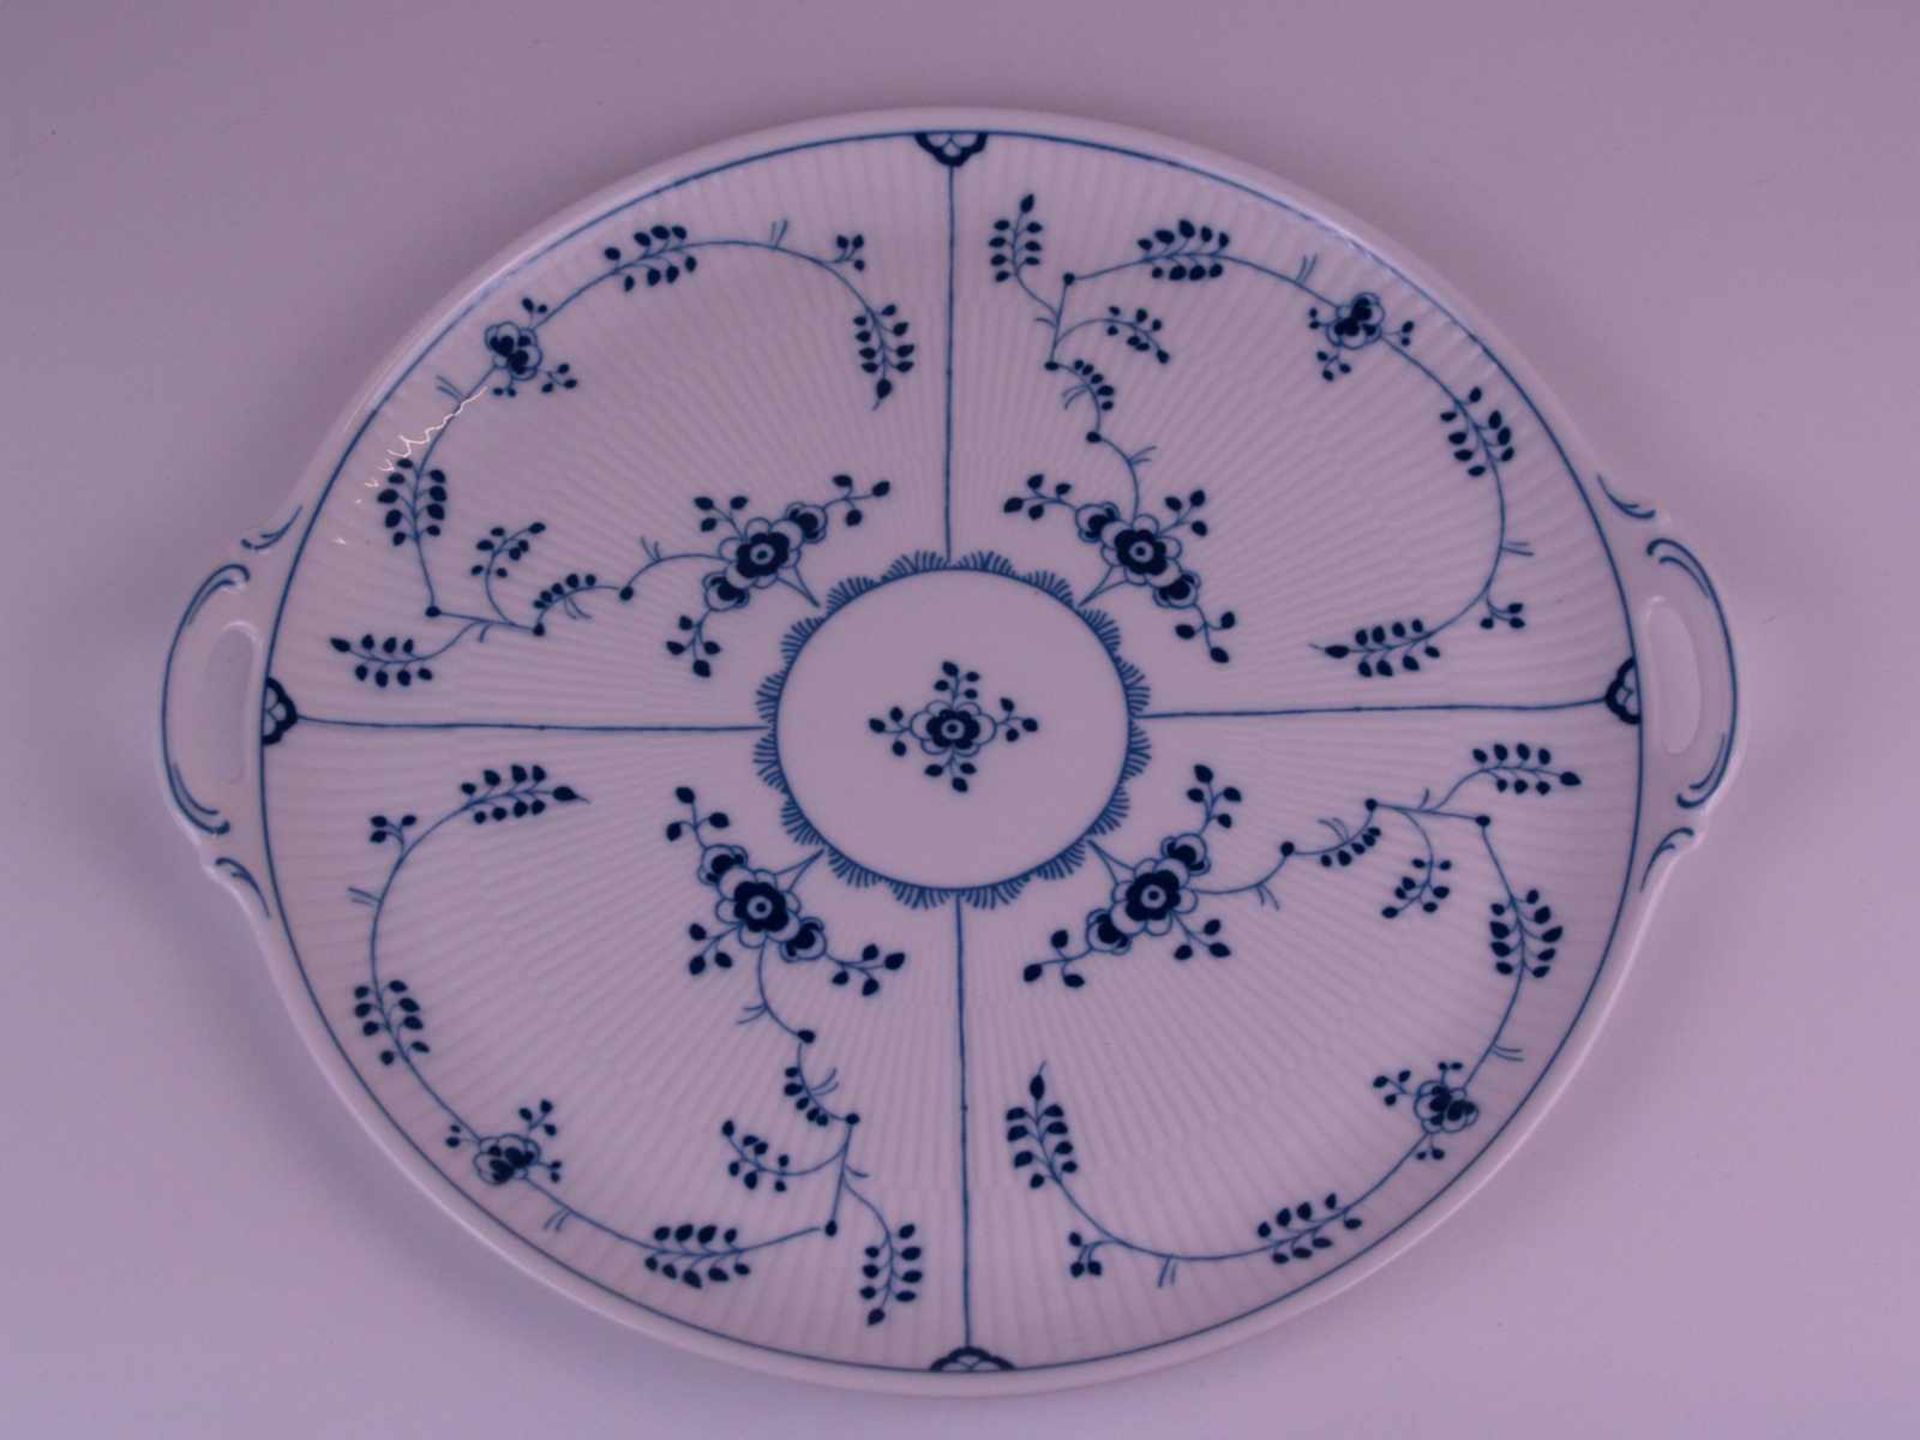 Deckelterrine auf Platte Hoechst - blaue Radmarke Hoechst, 20.Jh., blaues Strohblumendekor unter - Bild 2 aus 5